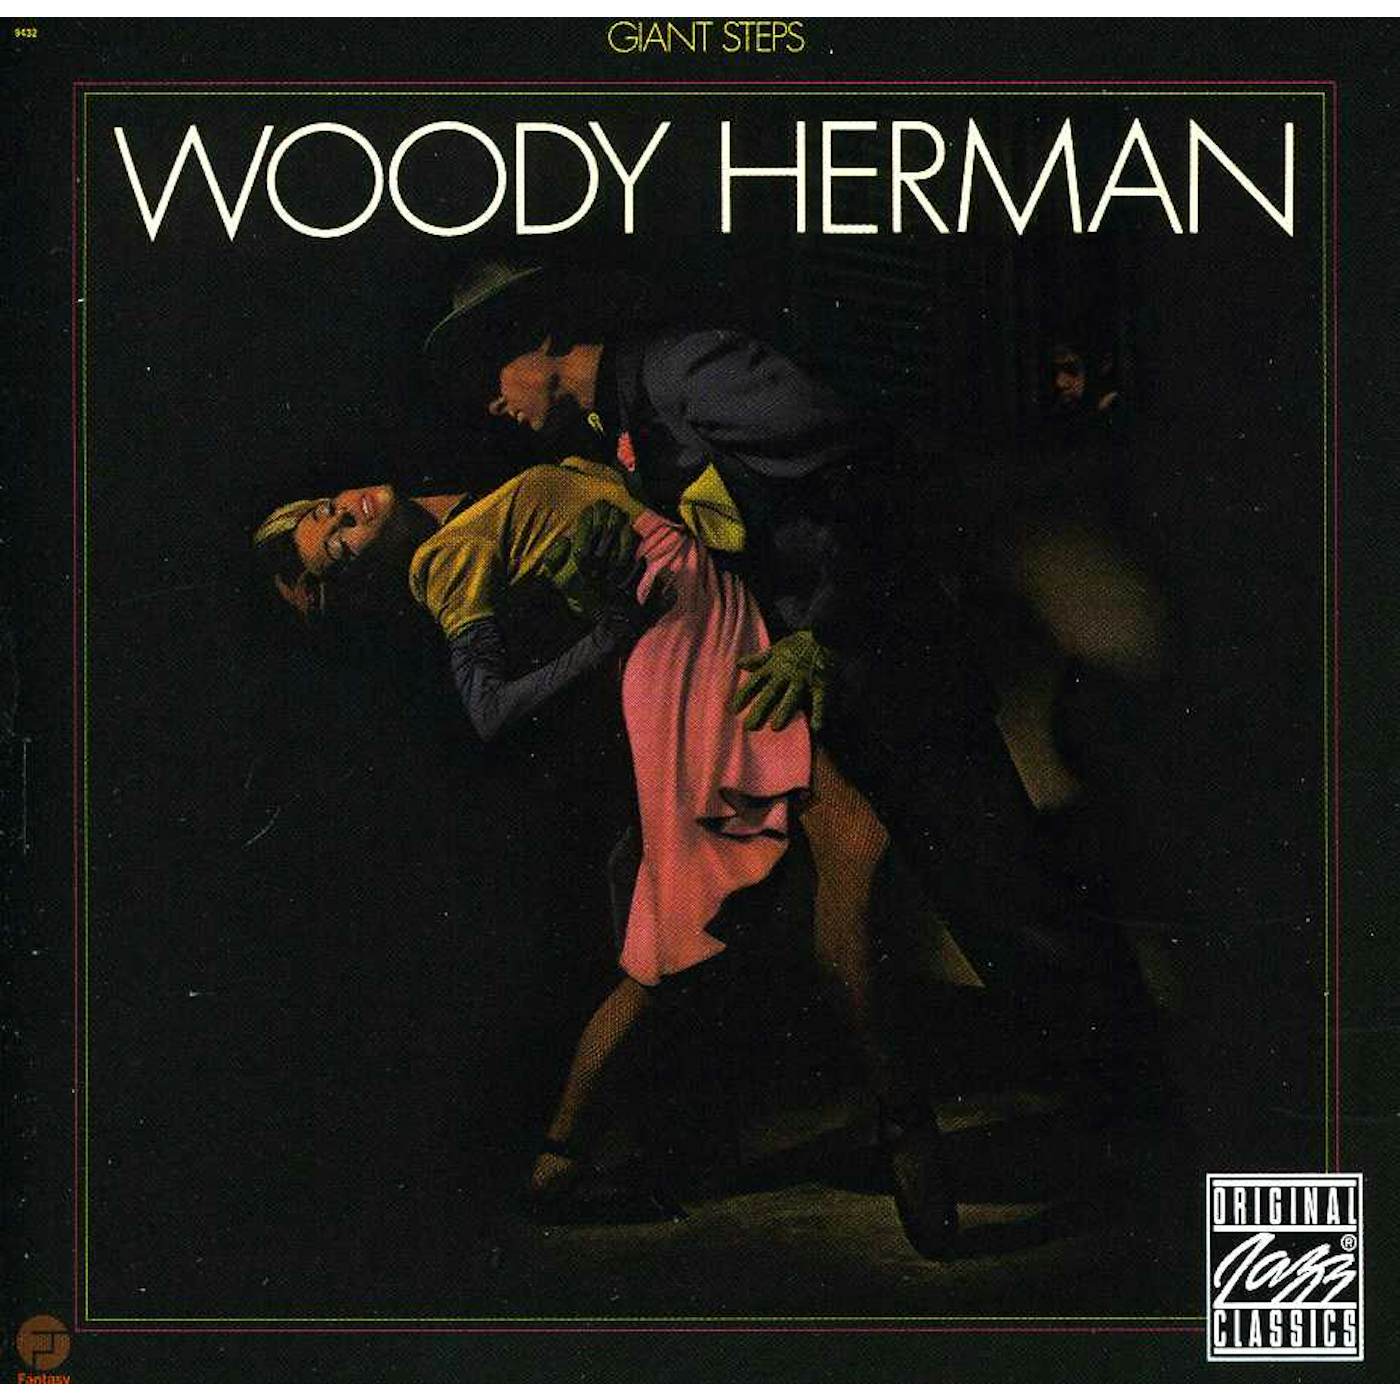 Woody Herman GIANT STEPS CD